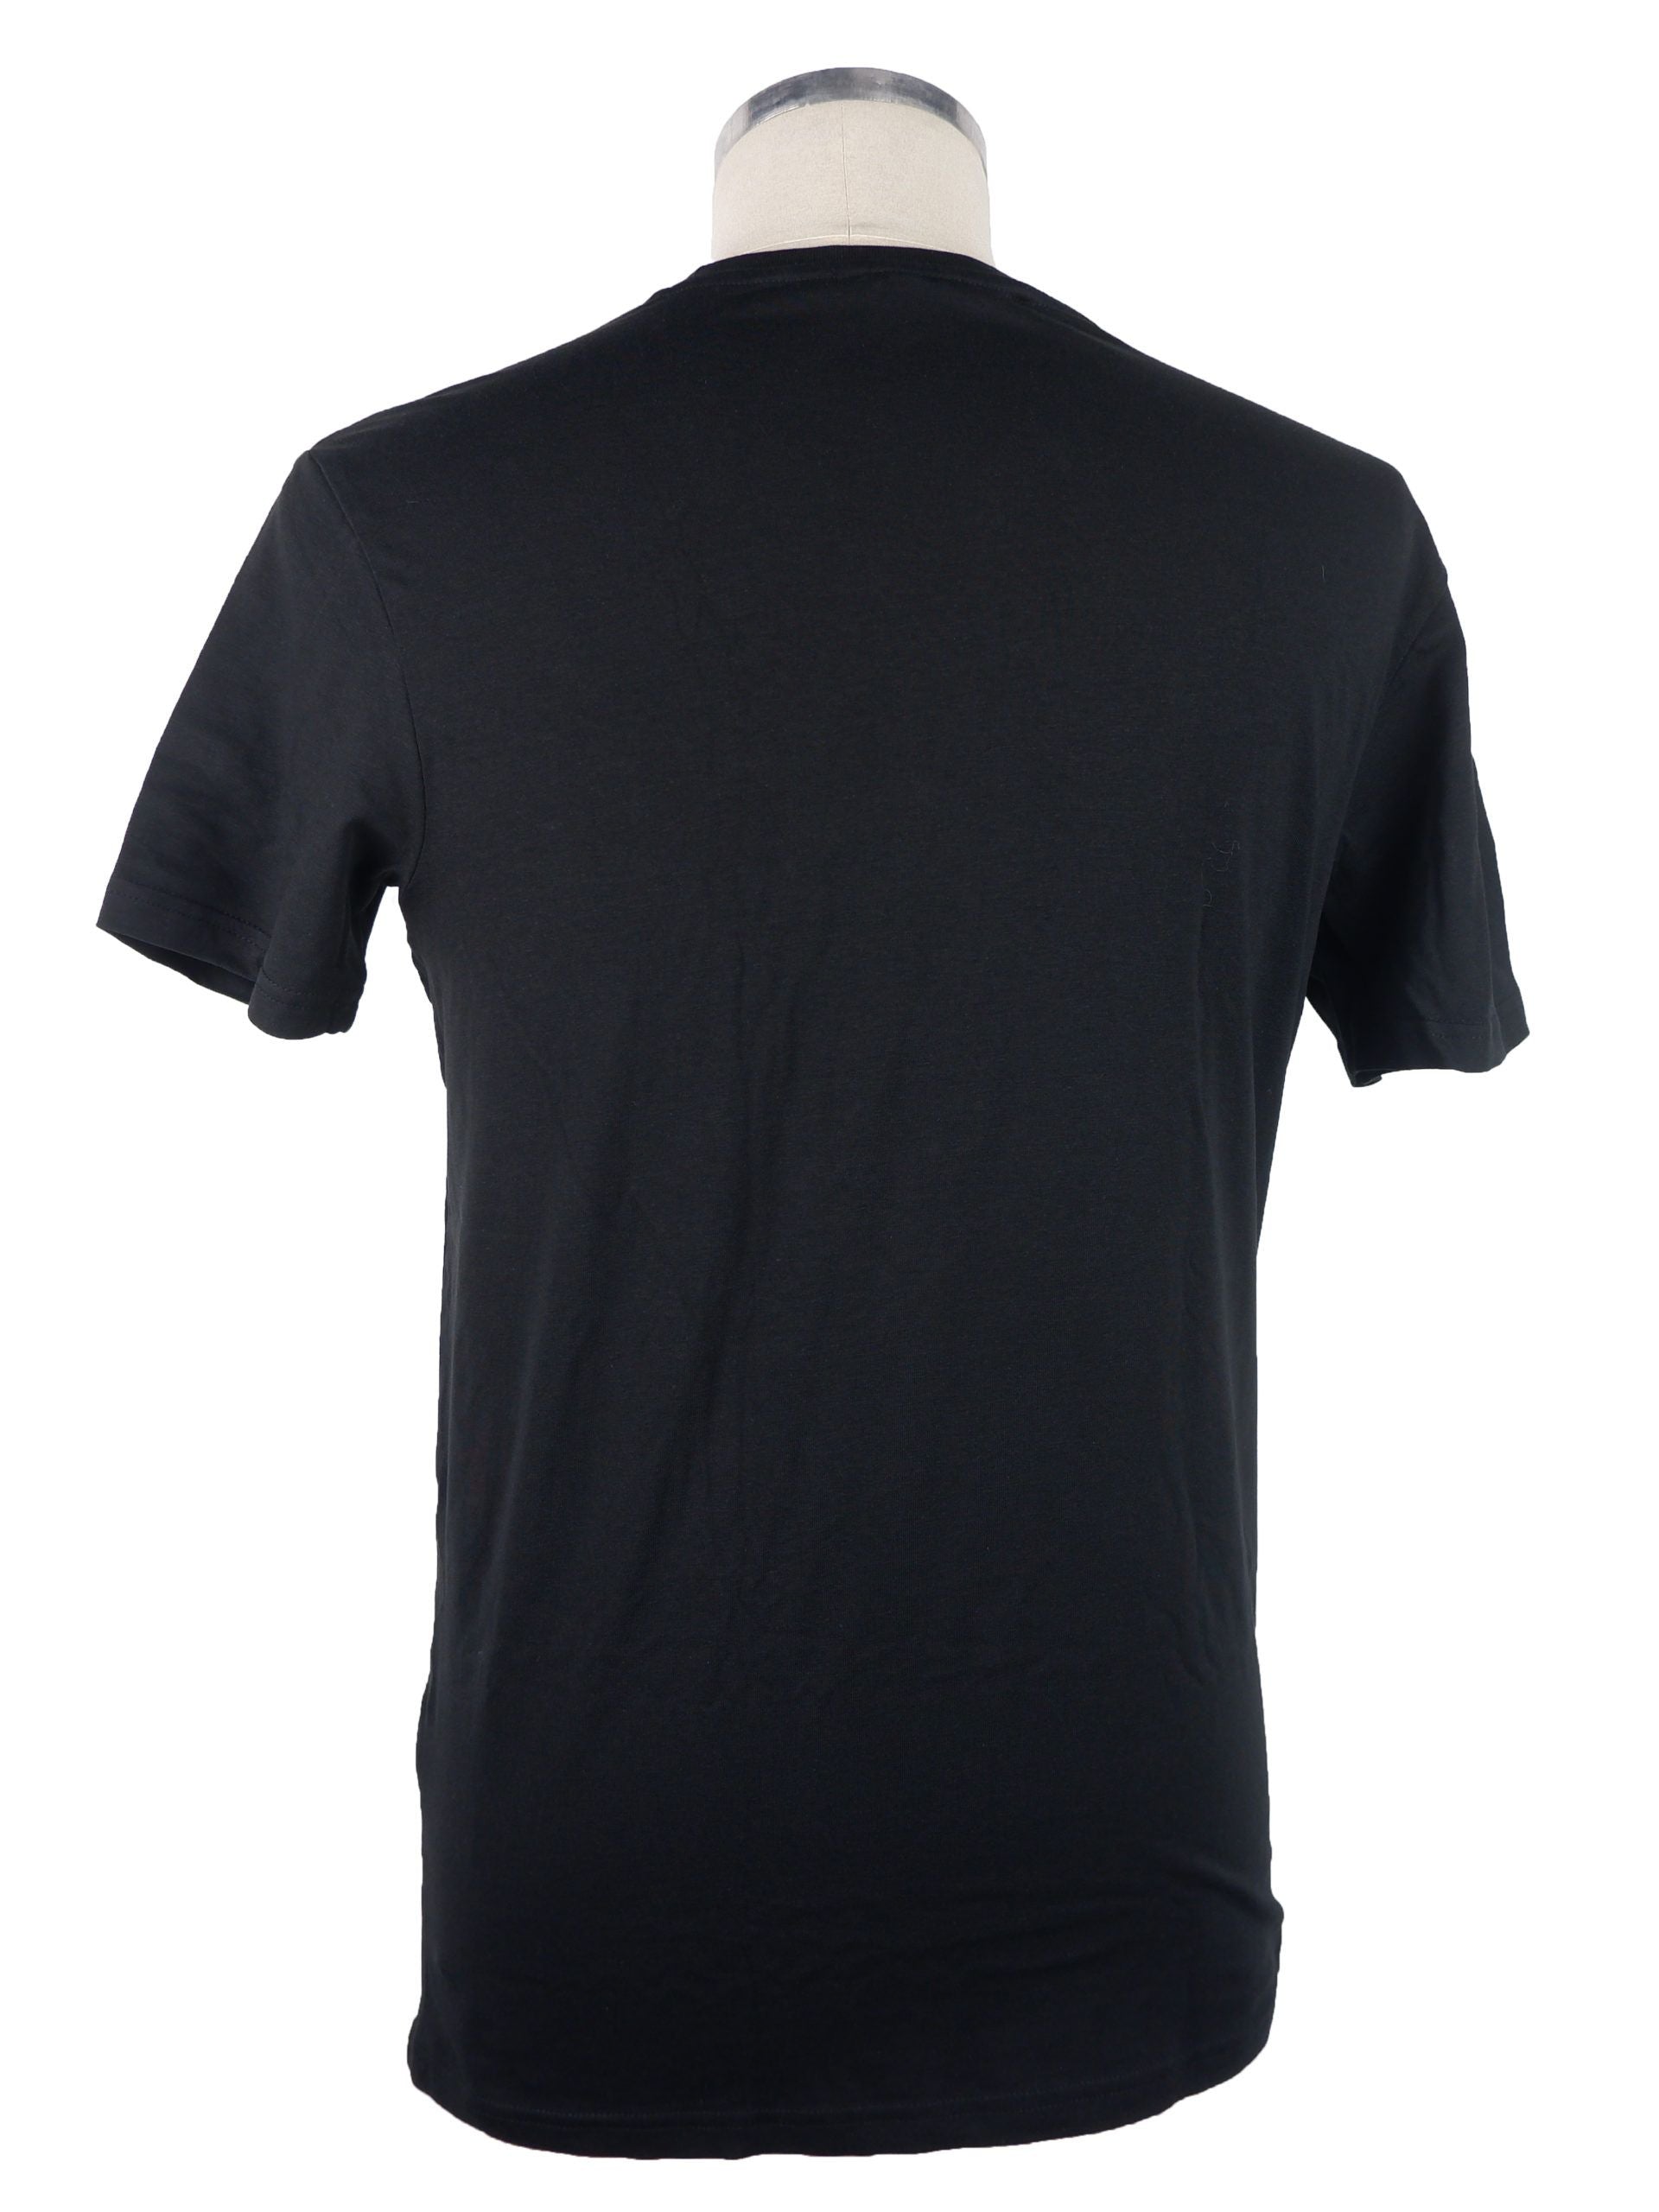 Black Brand Print T-Shirt